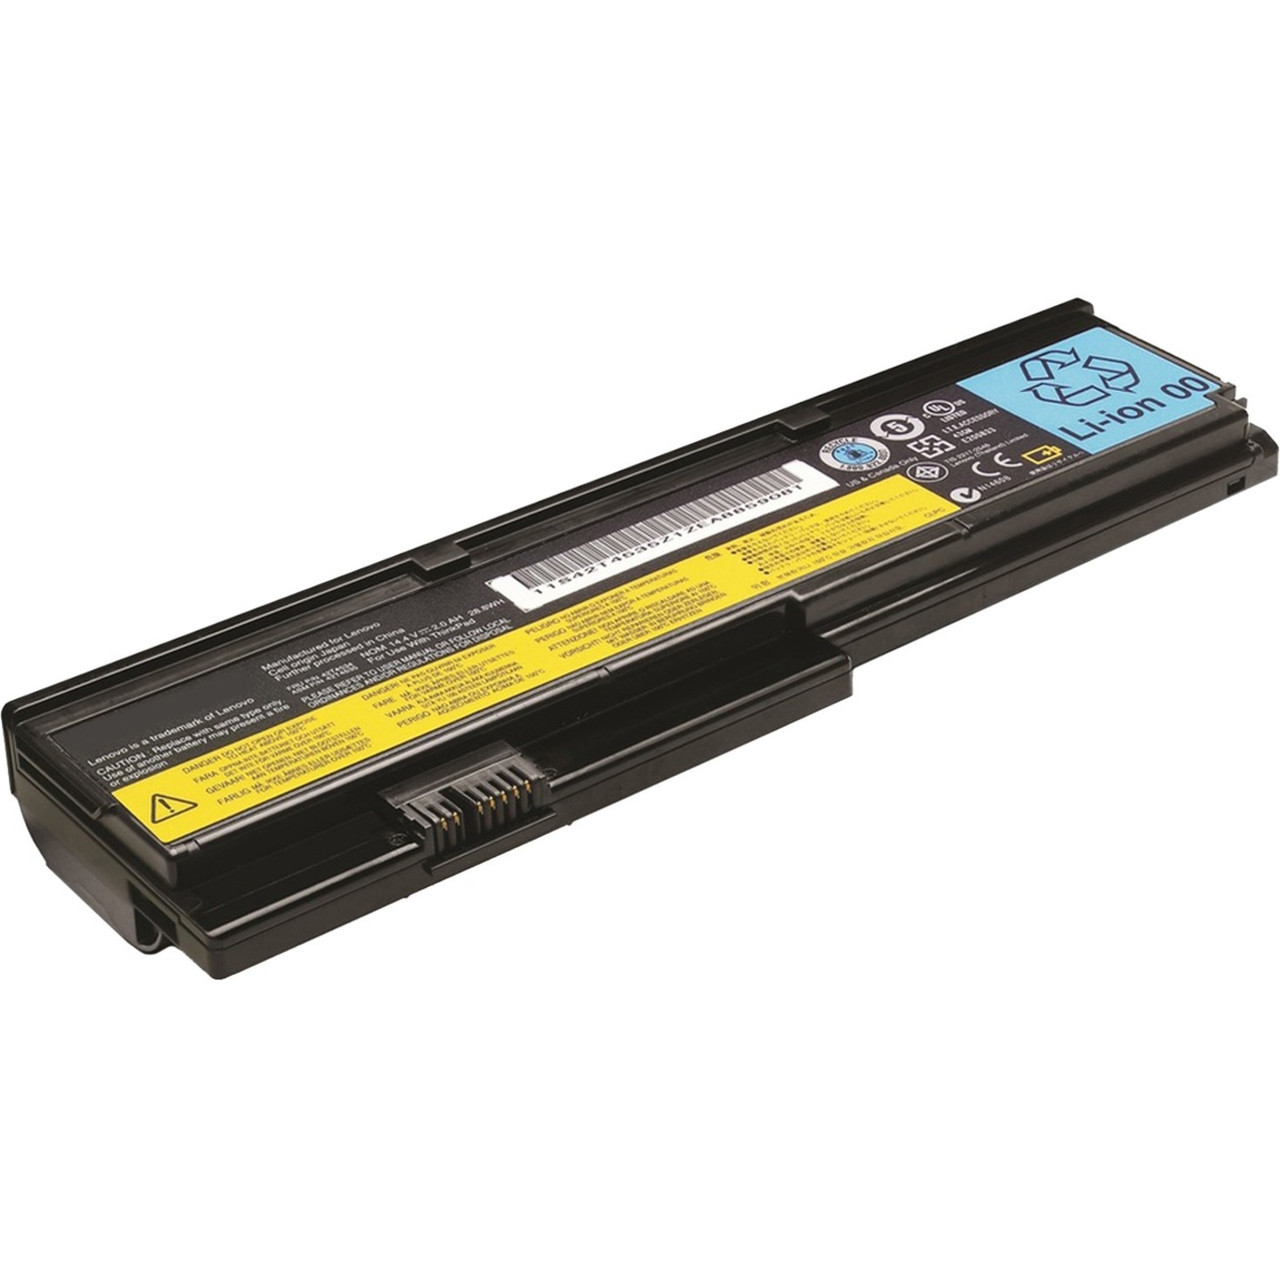 V7 43R9254-EV7 Battery for select LENOVO IBM laptops